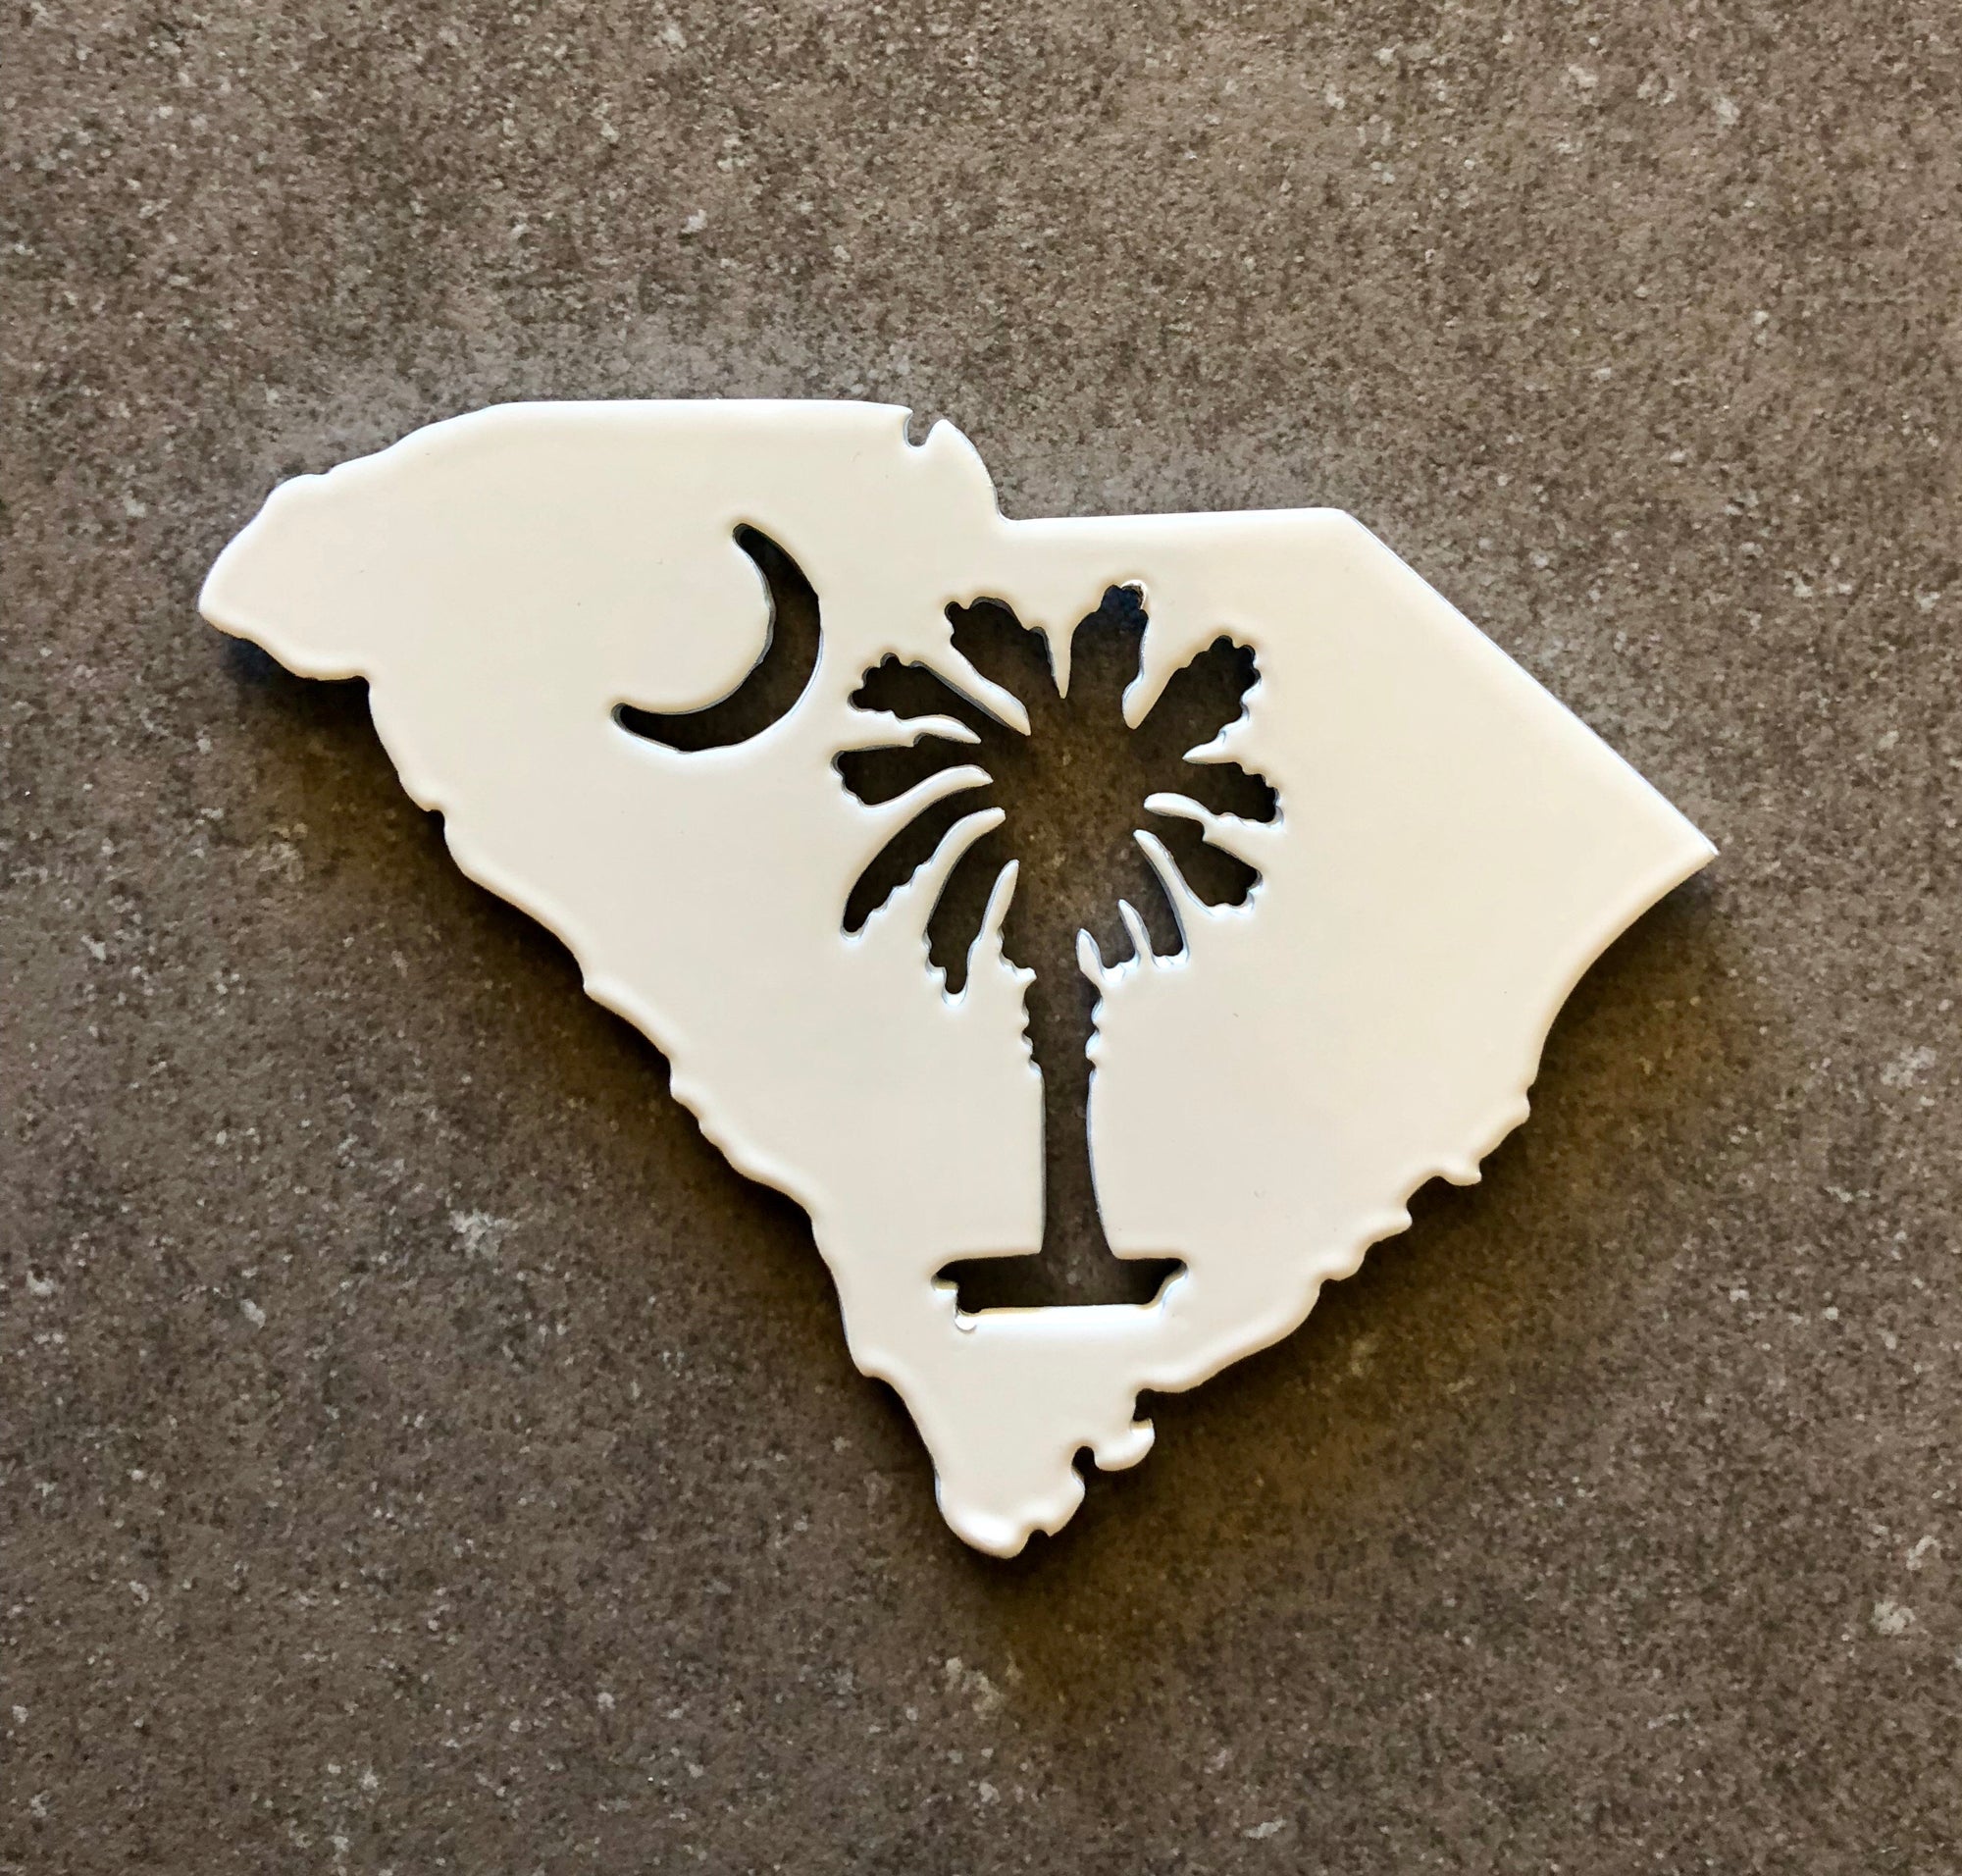 South Carolina Magnet